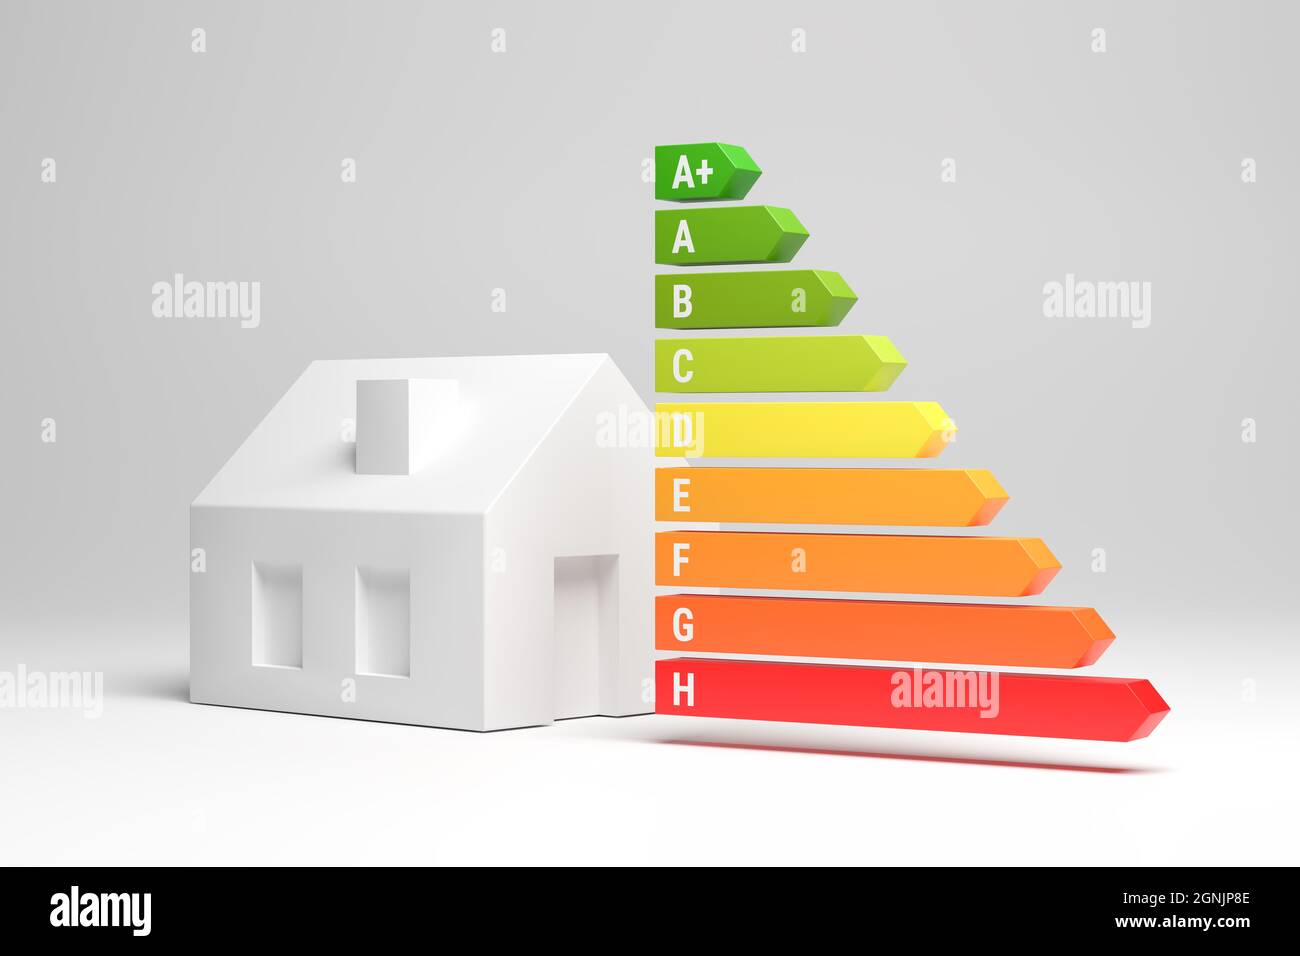 Energieetiketten für Häuser in Deutschland (Energieeffizienzklassen A+ bis H) Konzept. Ein Modellhaus neben den Energielabel-Pfeilen. Stockfoto